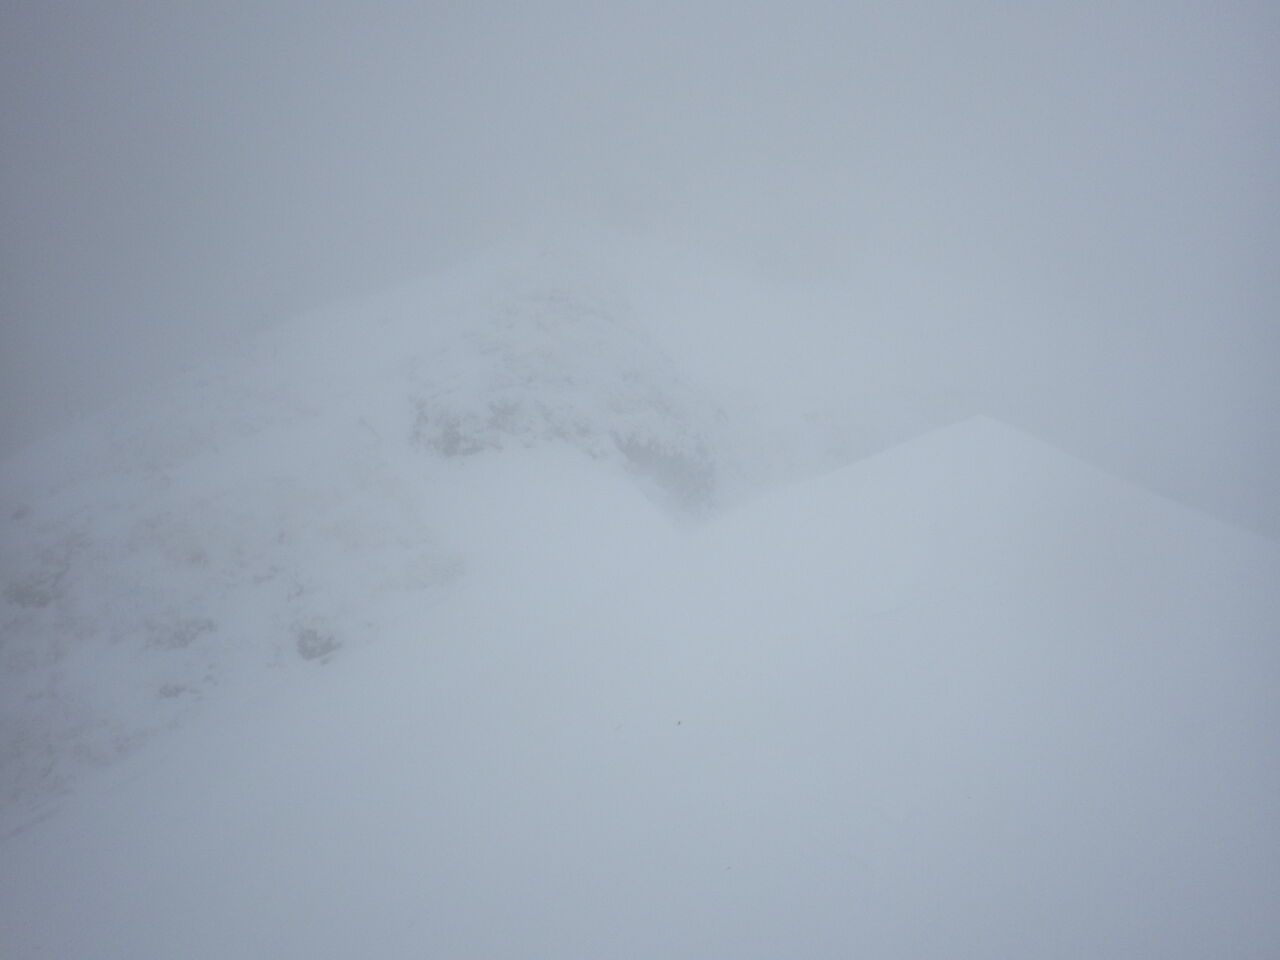 八ヶ岳連峰 横岳西壁 石尊稜 厳冬期アルパインクライミング FAF7D770-F511-42F5-AB4C-C42E45ED9B66